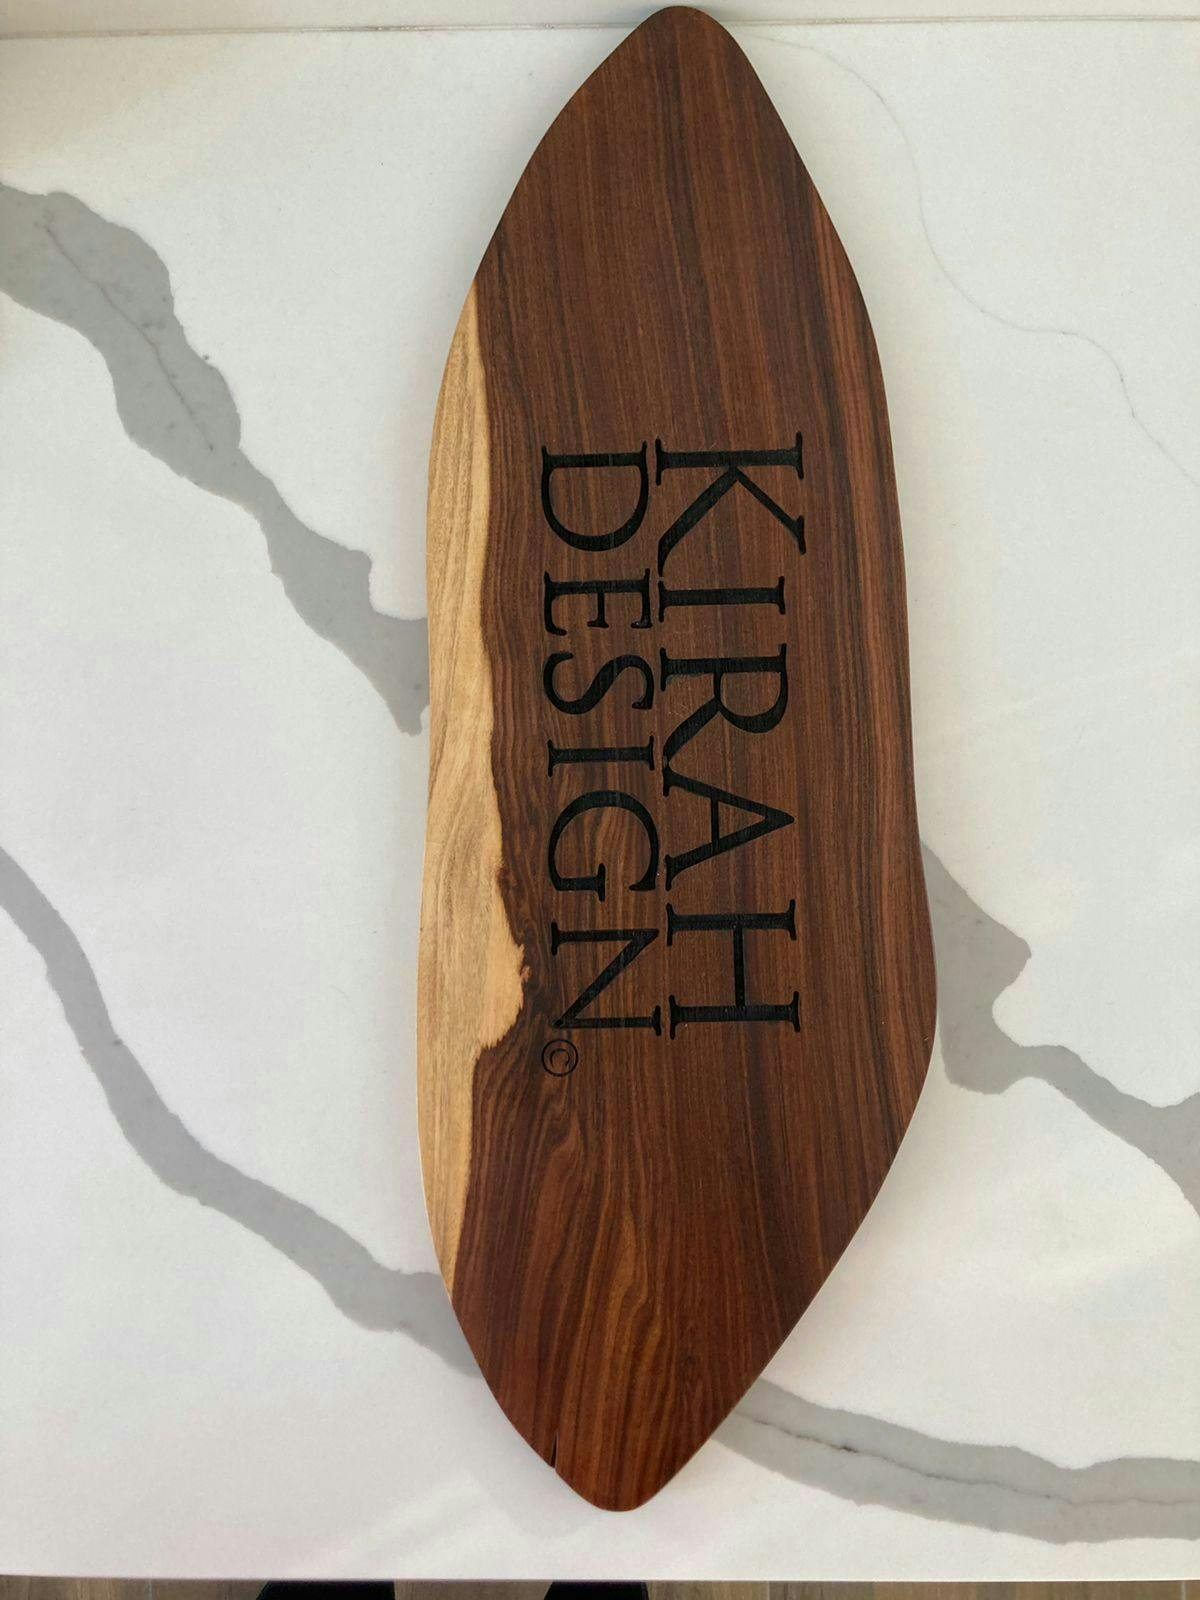 Tabla decorativa o para piqueos Kirah Design marca sostenible en madera rescatada con acabados de alta calidad. Medidas 54x17cm. Precio original S/390